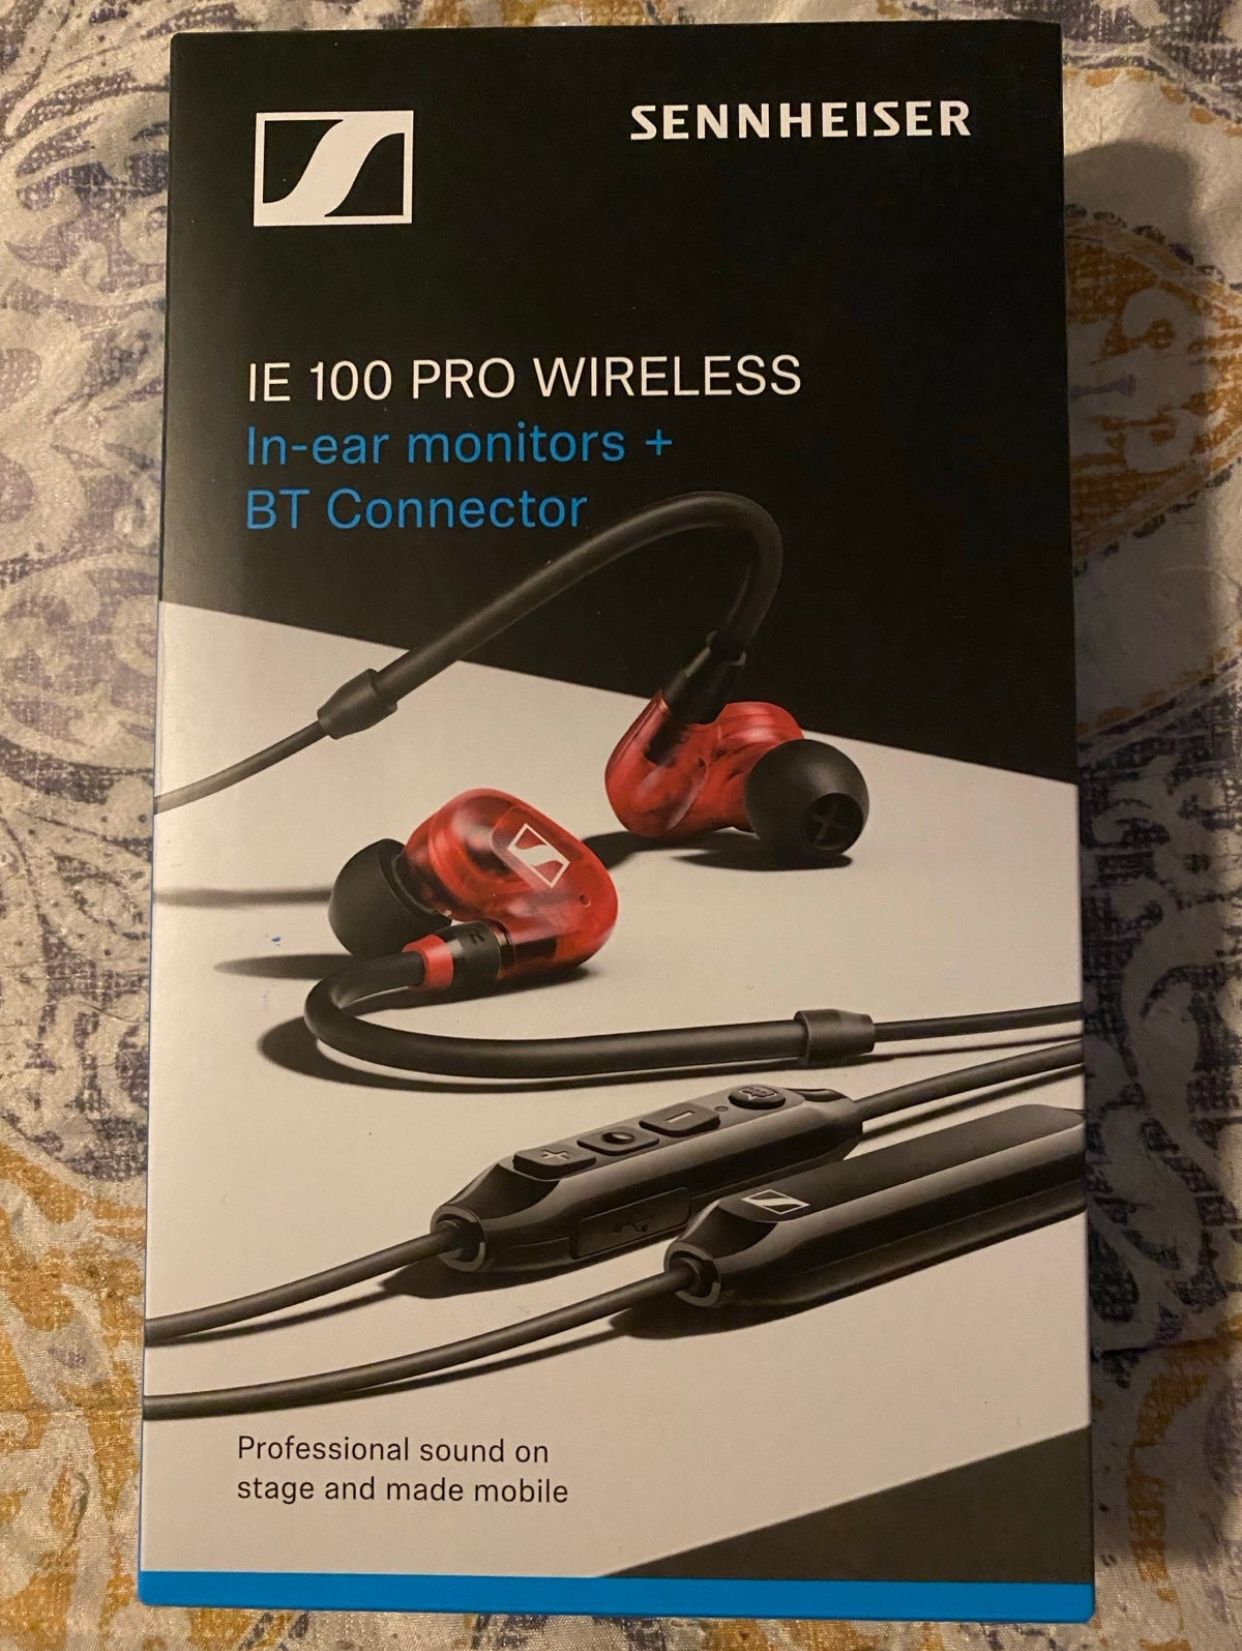 New Sennheiser IE 100 Pro Wireless In-ear monitors & BT Connector